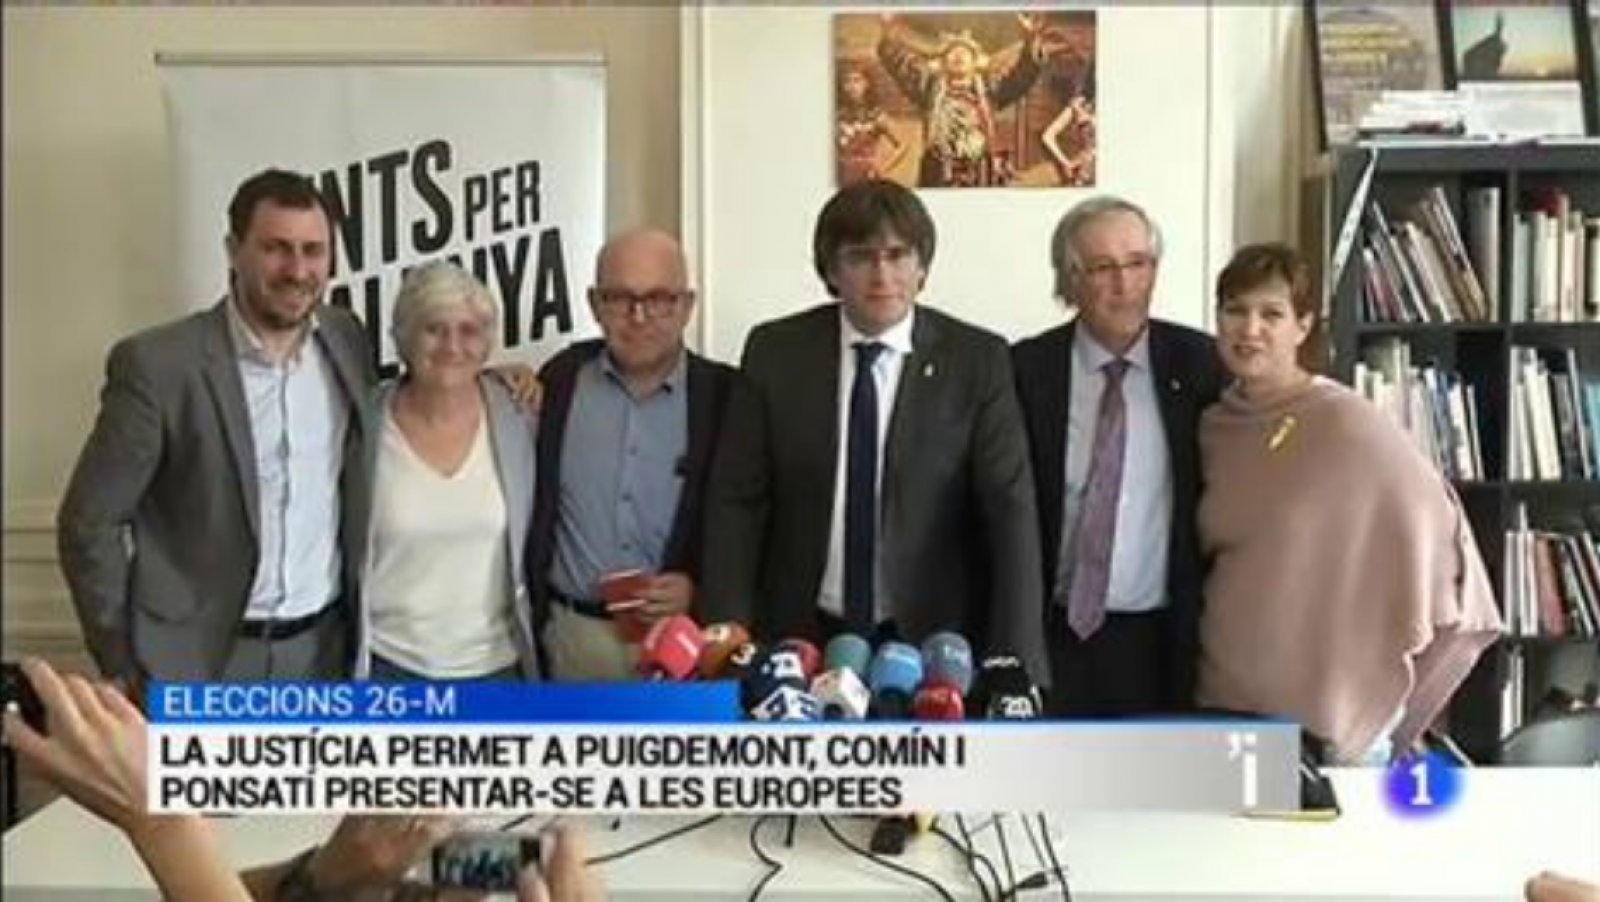 L'Informatiu | Sumari de les notícies del 06/05/2019 - RTVE.es